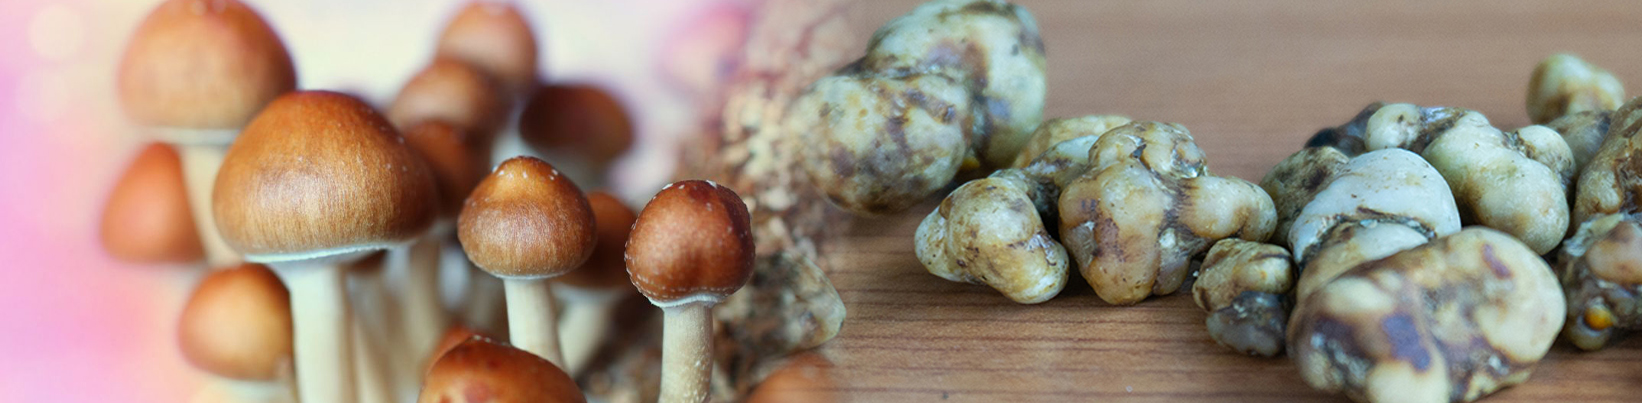 magic mushrooms vs magic truffles